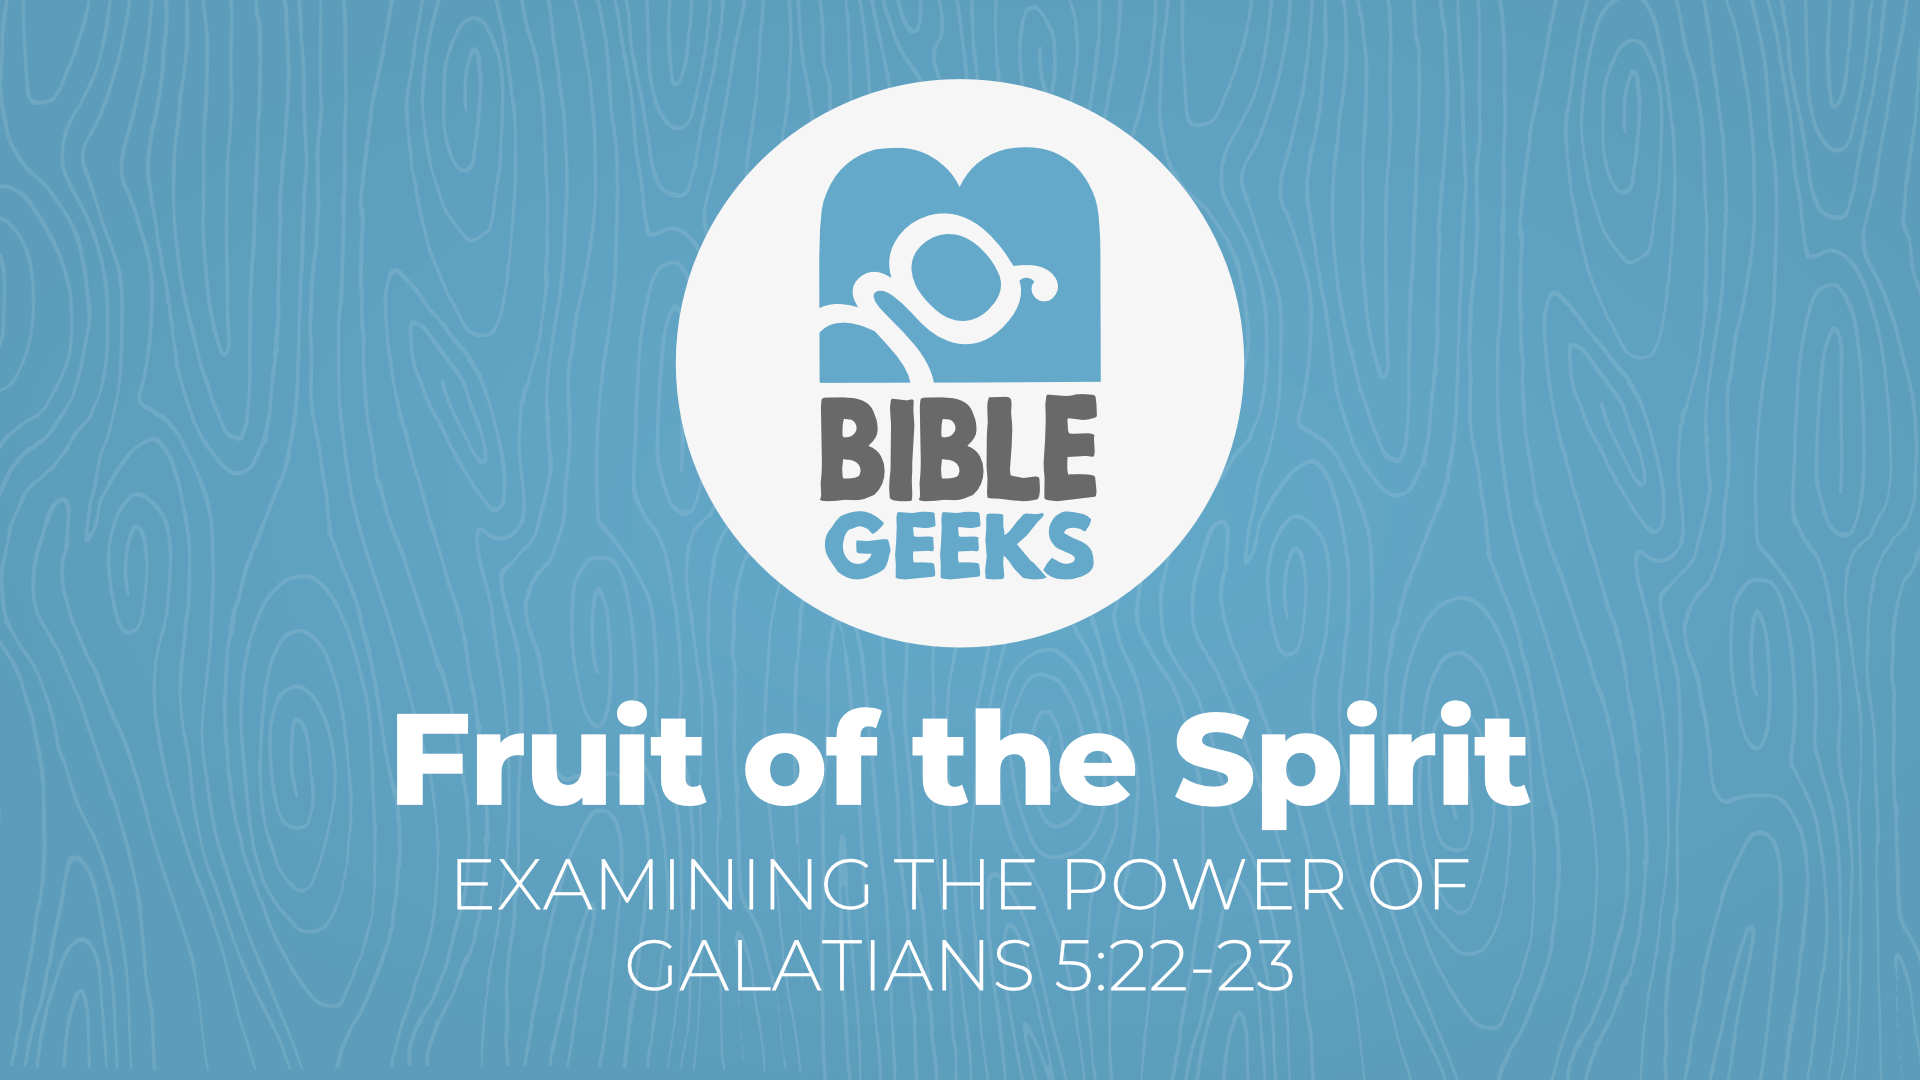 bibleGeeksSeriesPosterTemplate-FruitOfTheSpirit.png